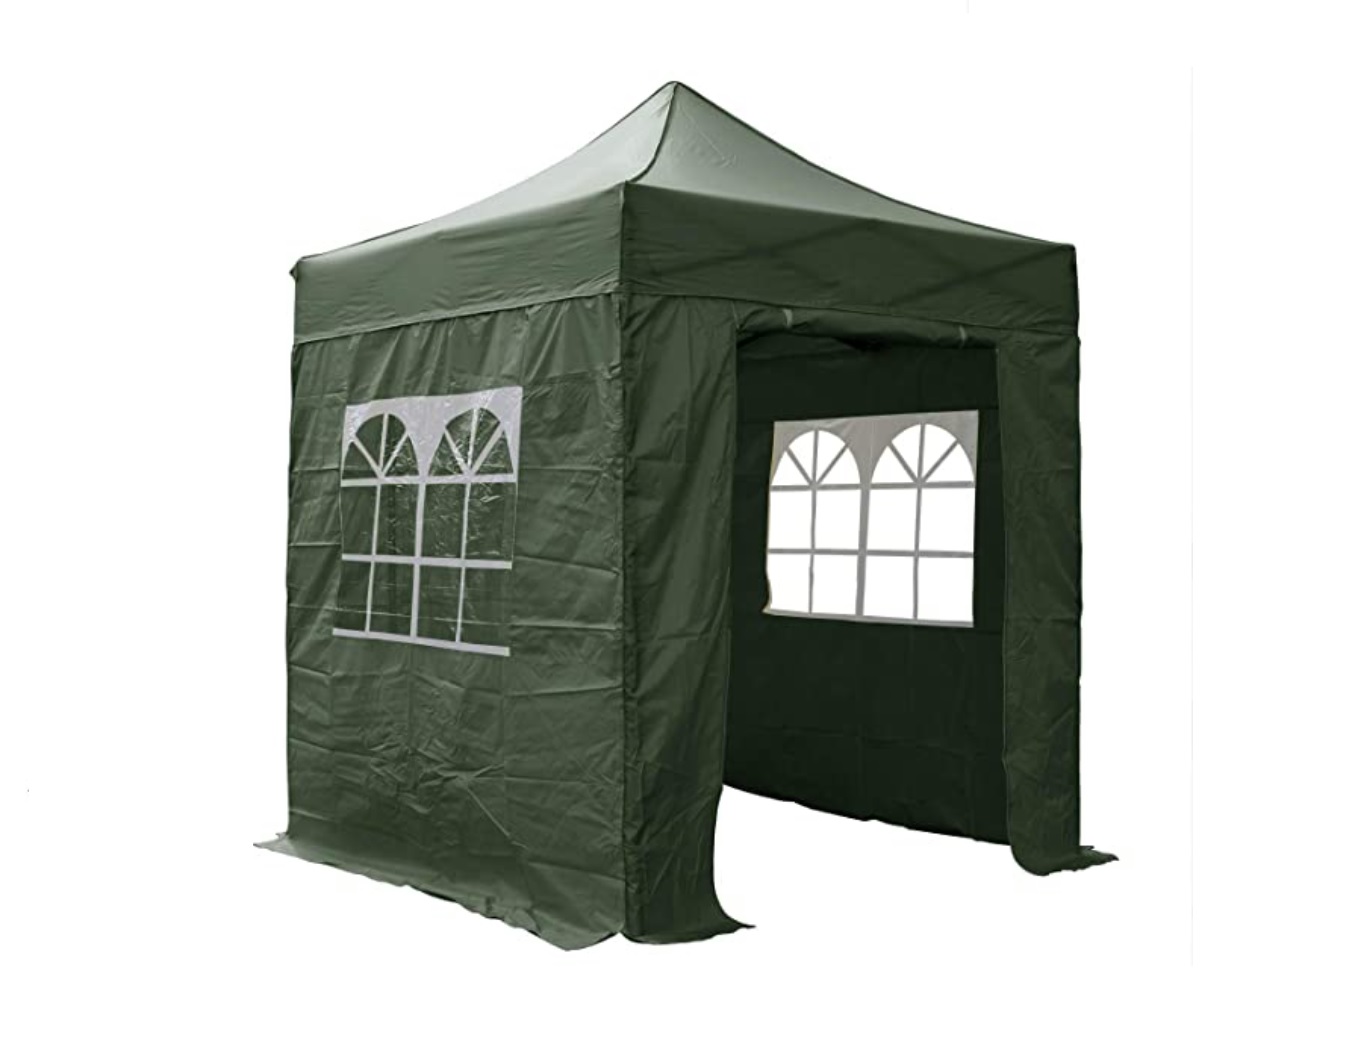 Airwave 2mx2m pop-up tent 